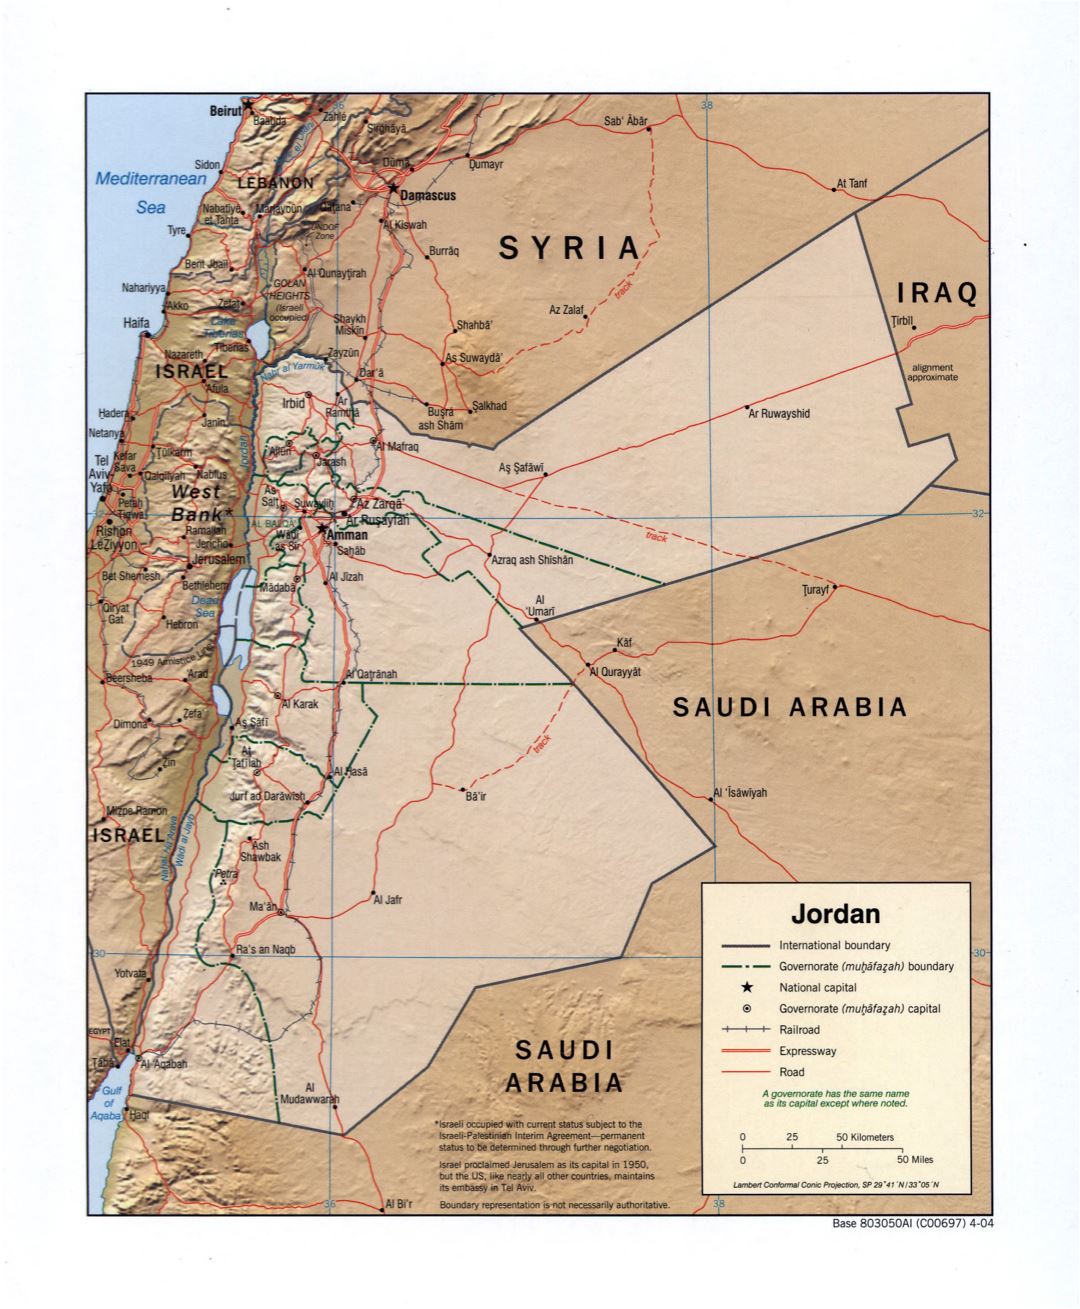 Grande detallado mapa político y administrativo de Jordania con socorro, carreteras, ferrocarriles y principales ciudades - 2004